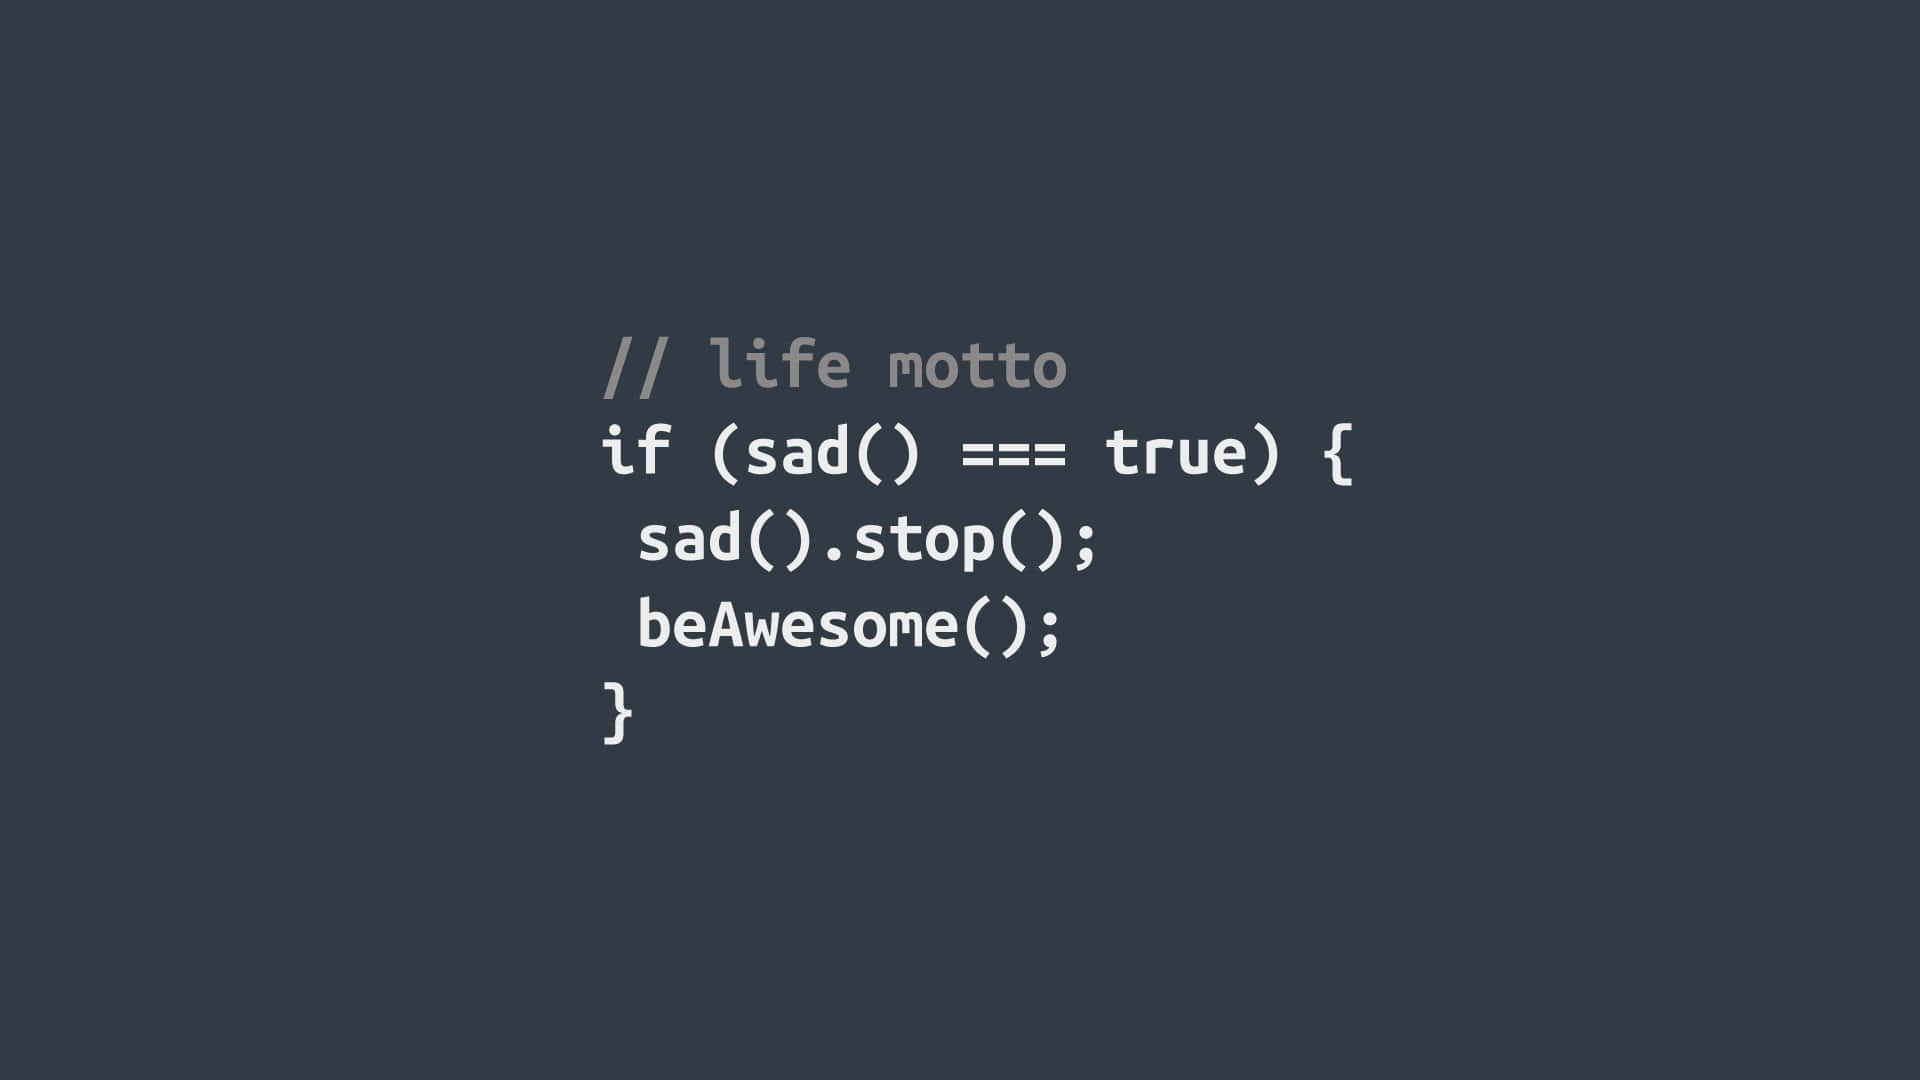 Code Wallpaper